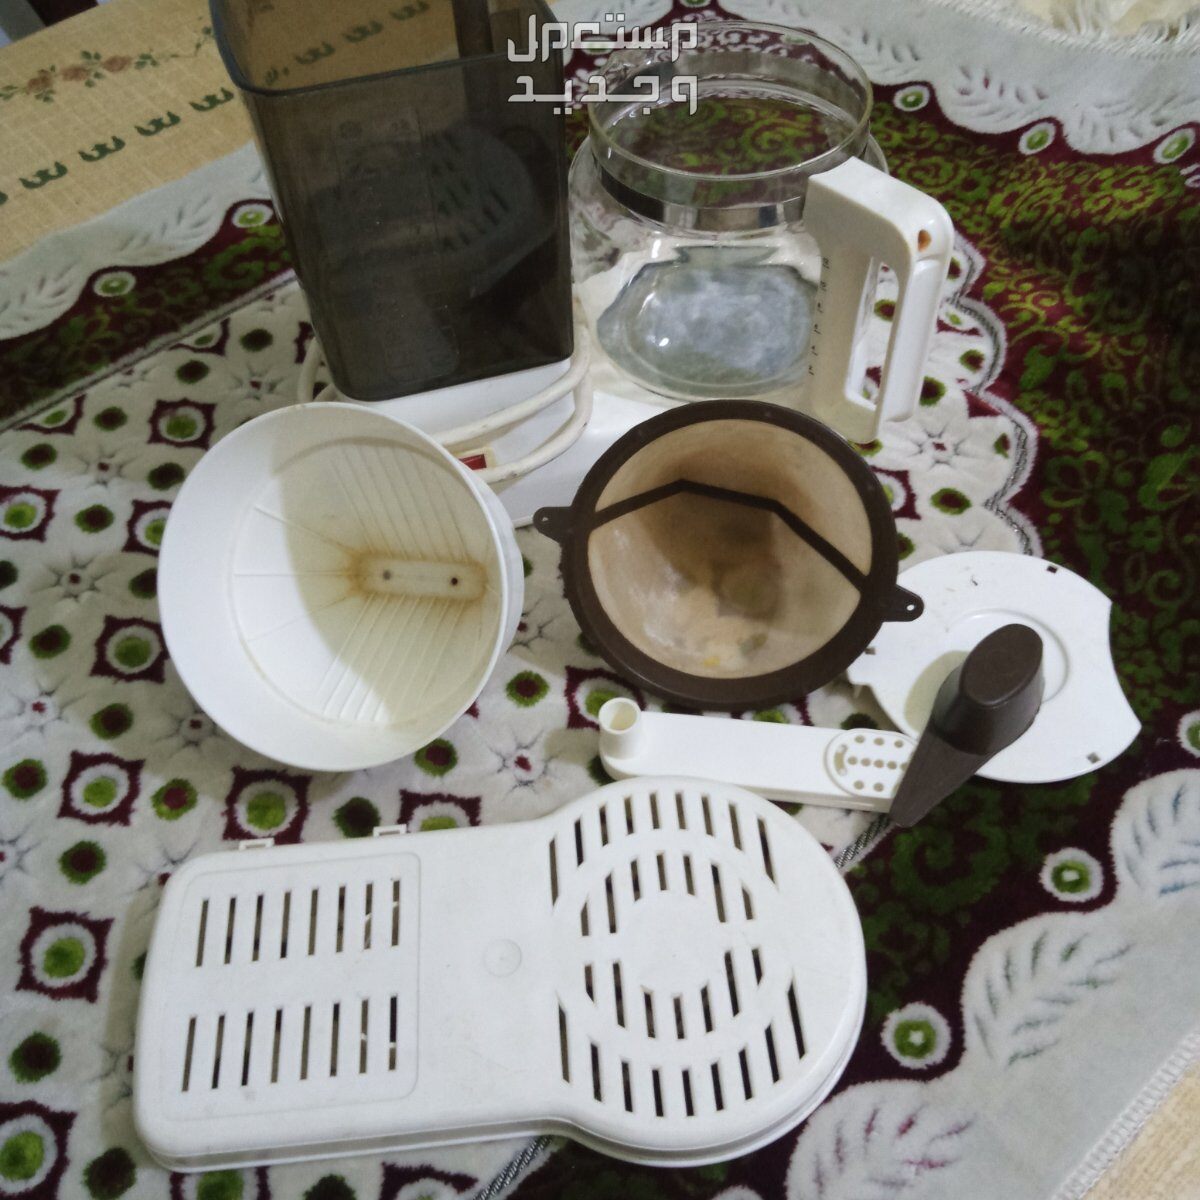 ماكينه صنع قهوه بالطريقة الأمريكية مستعملة مرتين للتجربة في محرم بك بسعر 750 جنيه مصري